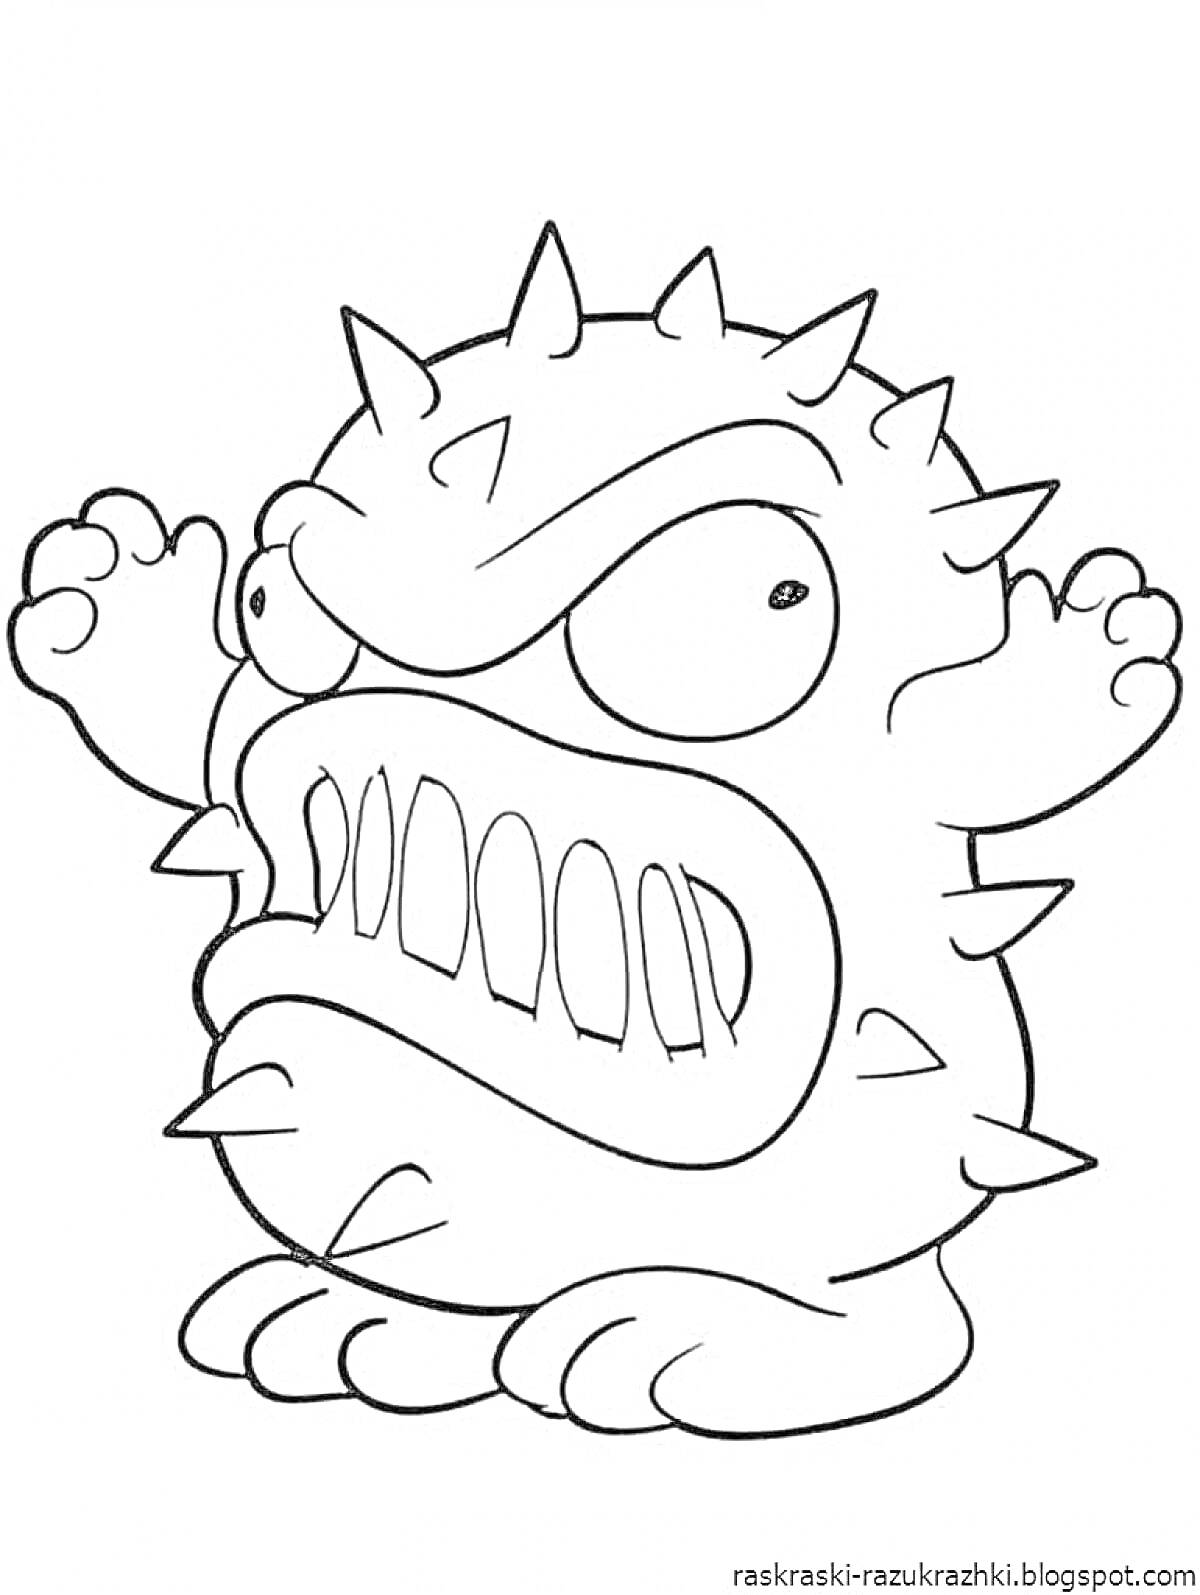 Раскраска Круглый шипастый монстр с большими глазами и зубастым ртом.